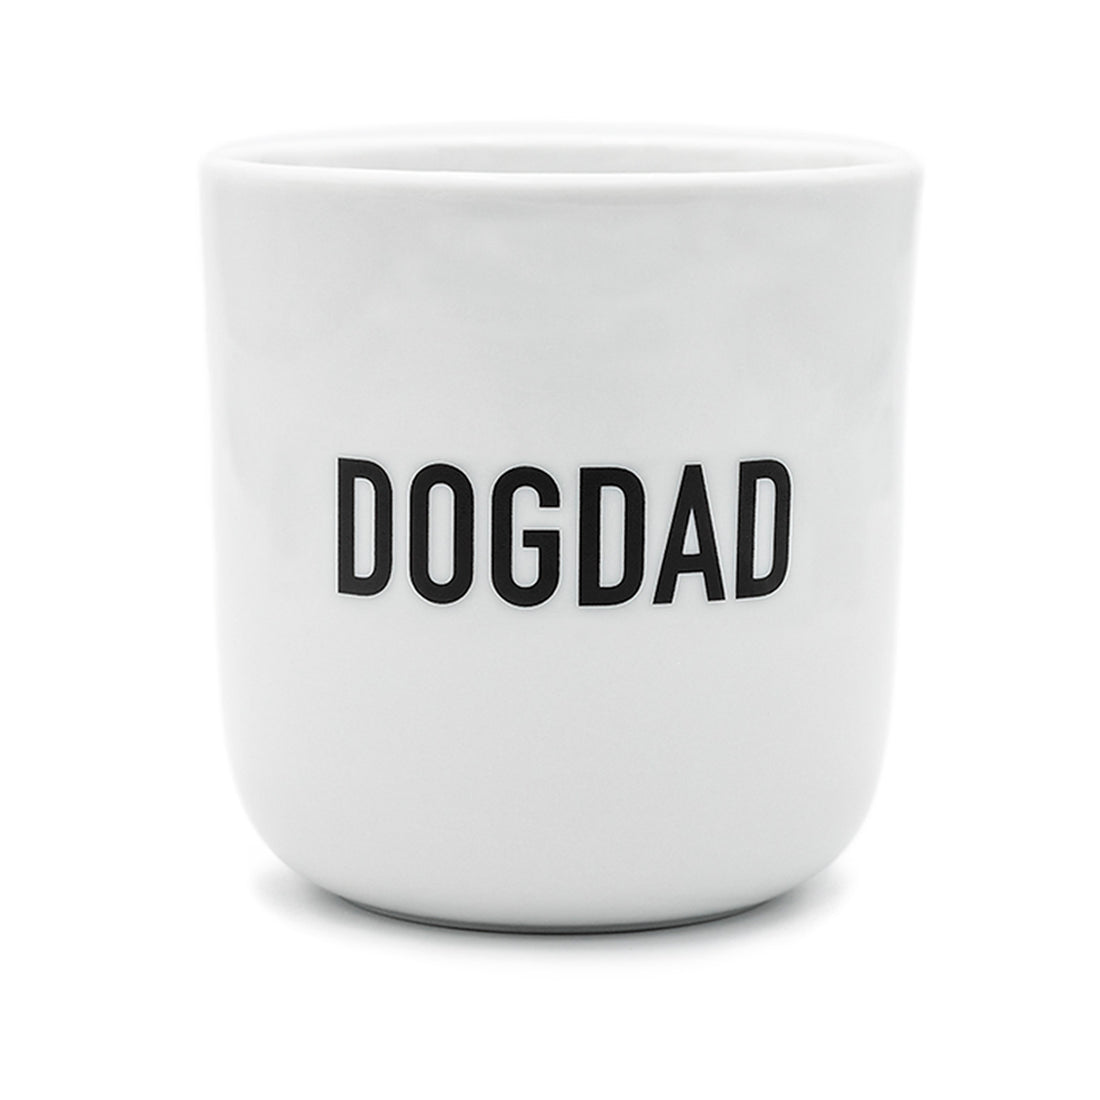 DOGDAD gift set